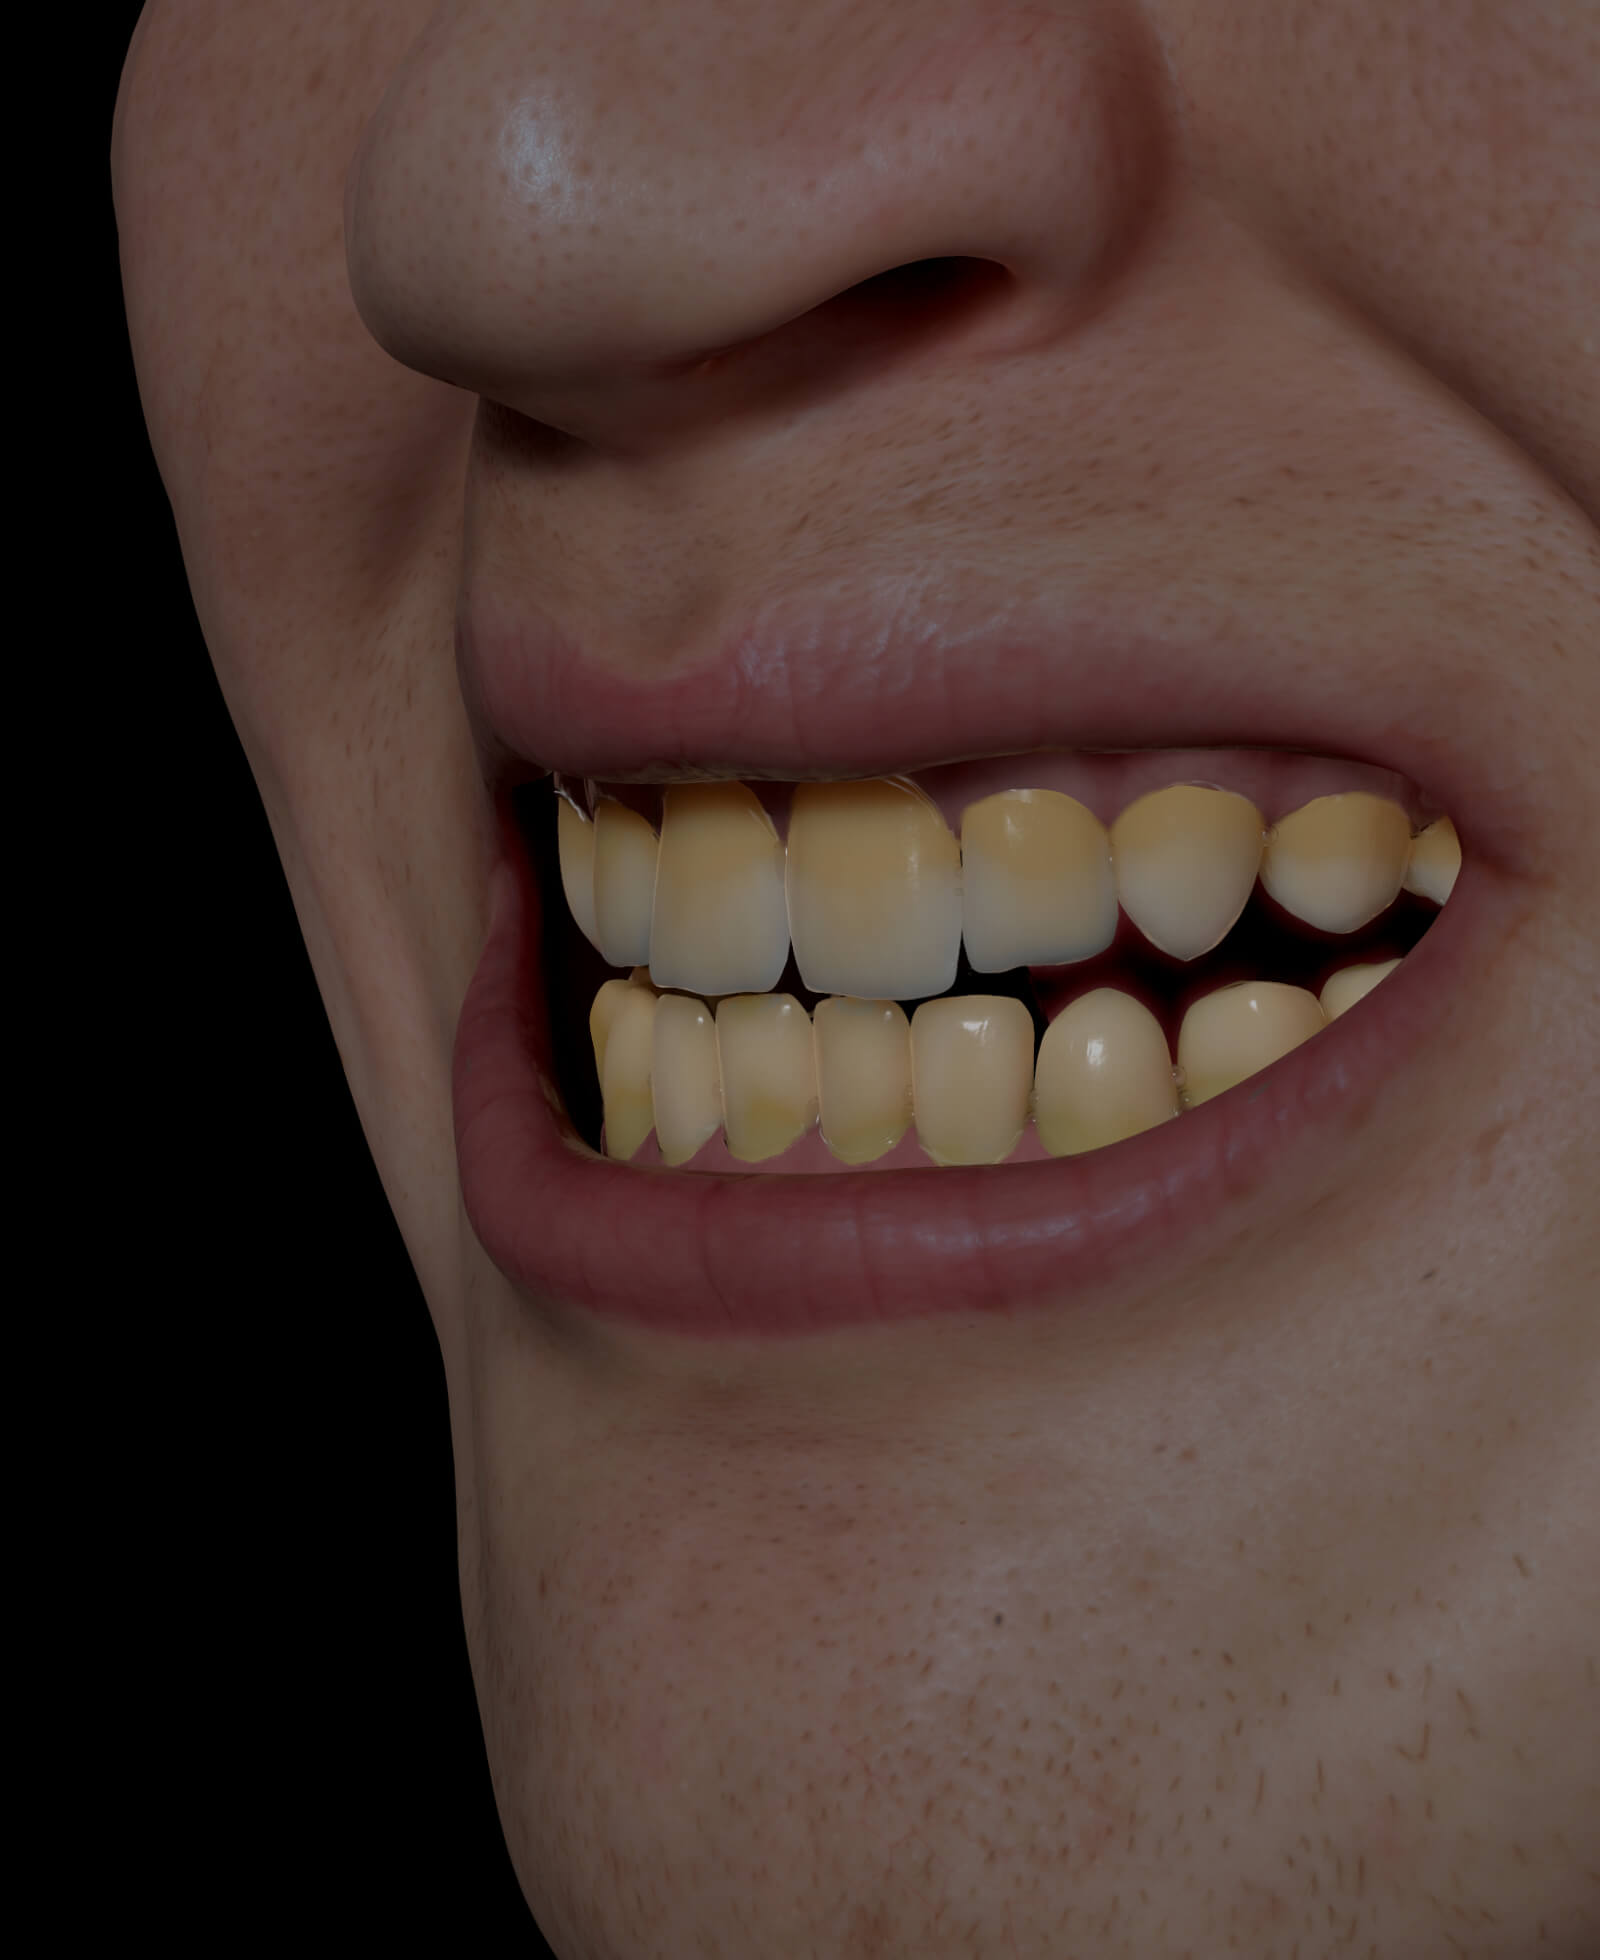 Patient de la Clinique Chloé avec des dents décolorées, jaunes